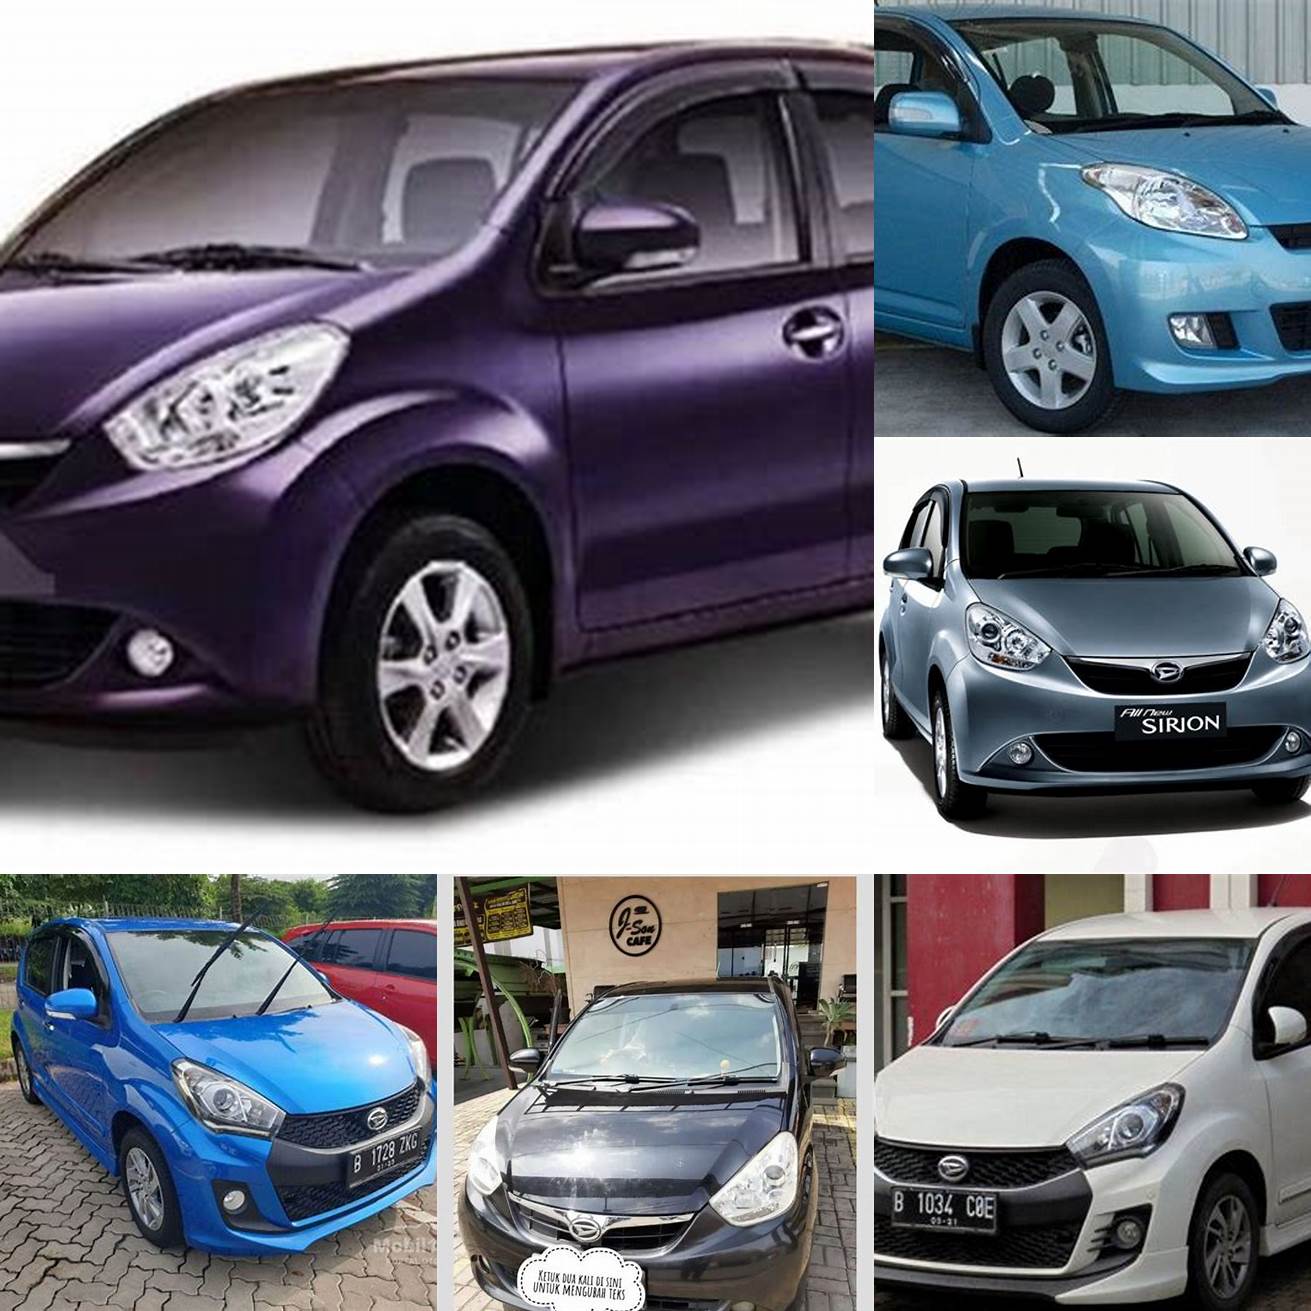 Harga mobil Sirion bekas tahun 2011 - 2013 berkisar antara 90 - 120 juta rupiah